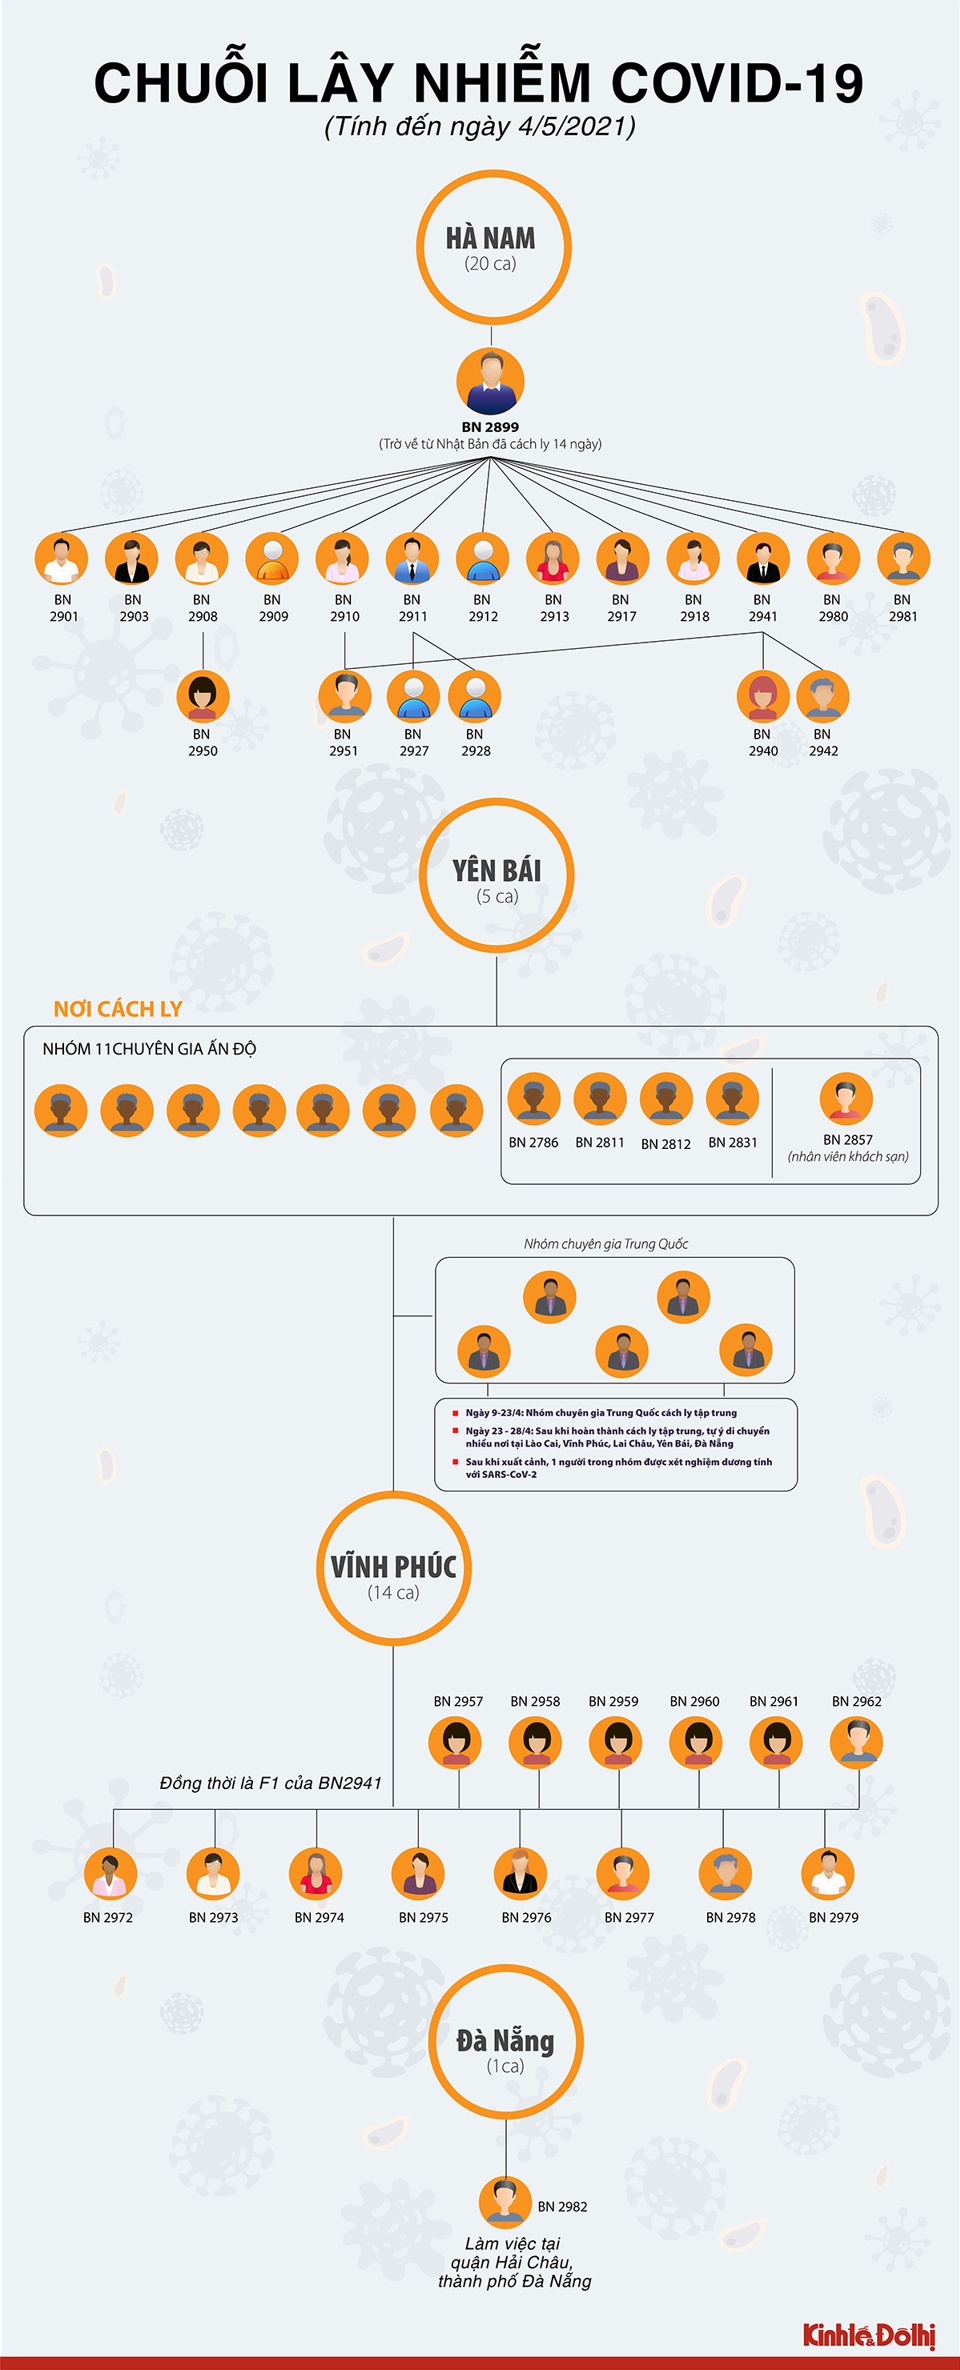 [Infographic] Các chuỗi lây nhiễm Covid-19 trong cộng đồng tại Việt Nam hiện nay - Ảnh 1